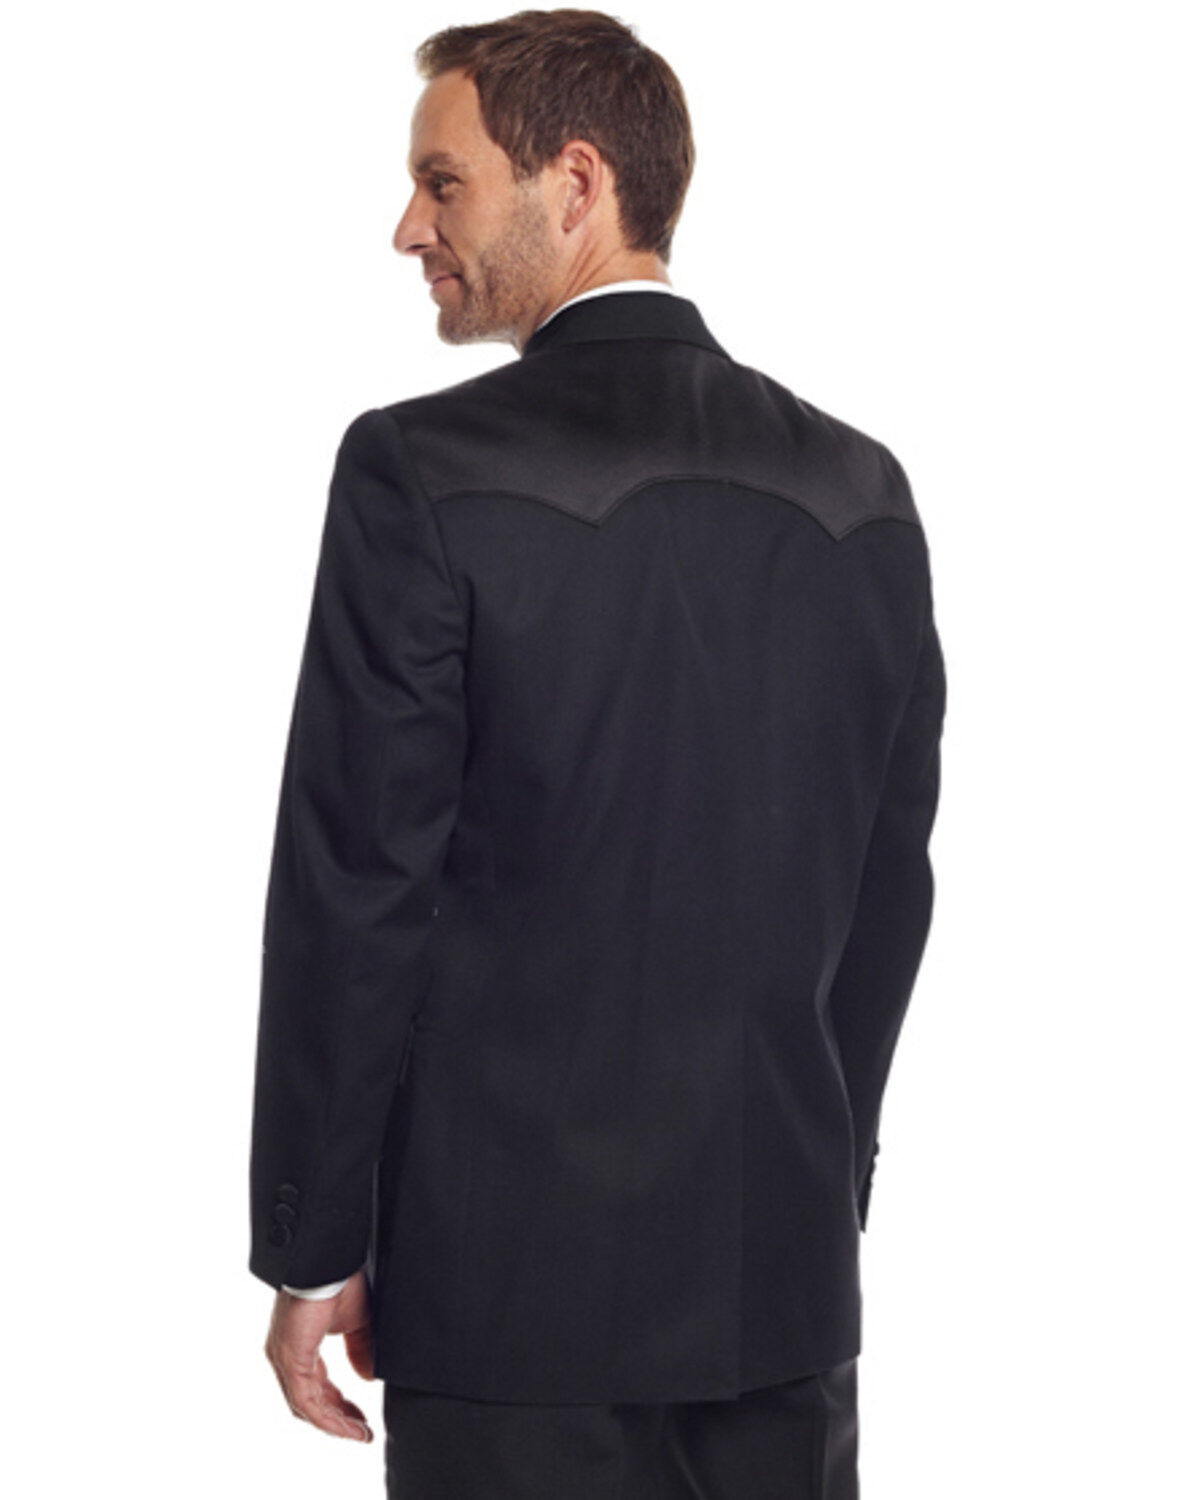 40S 32W Mens Western Wear Formal Tuxedo Suit Black